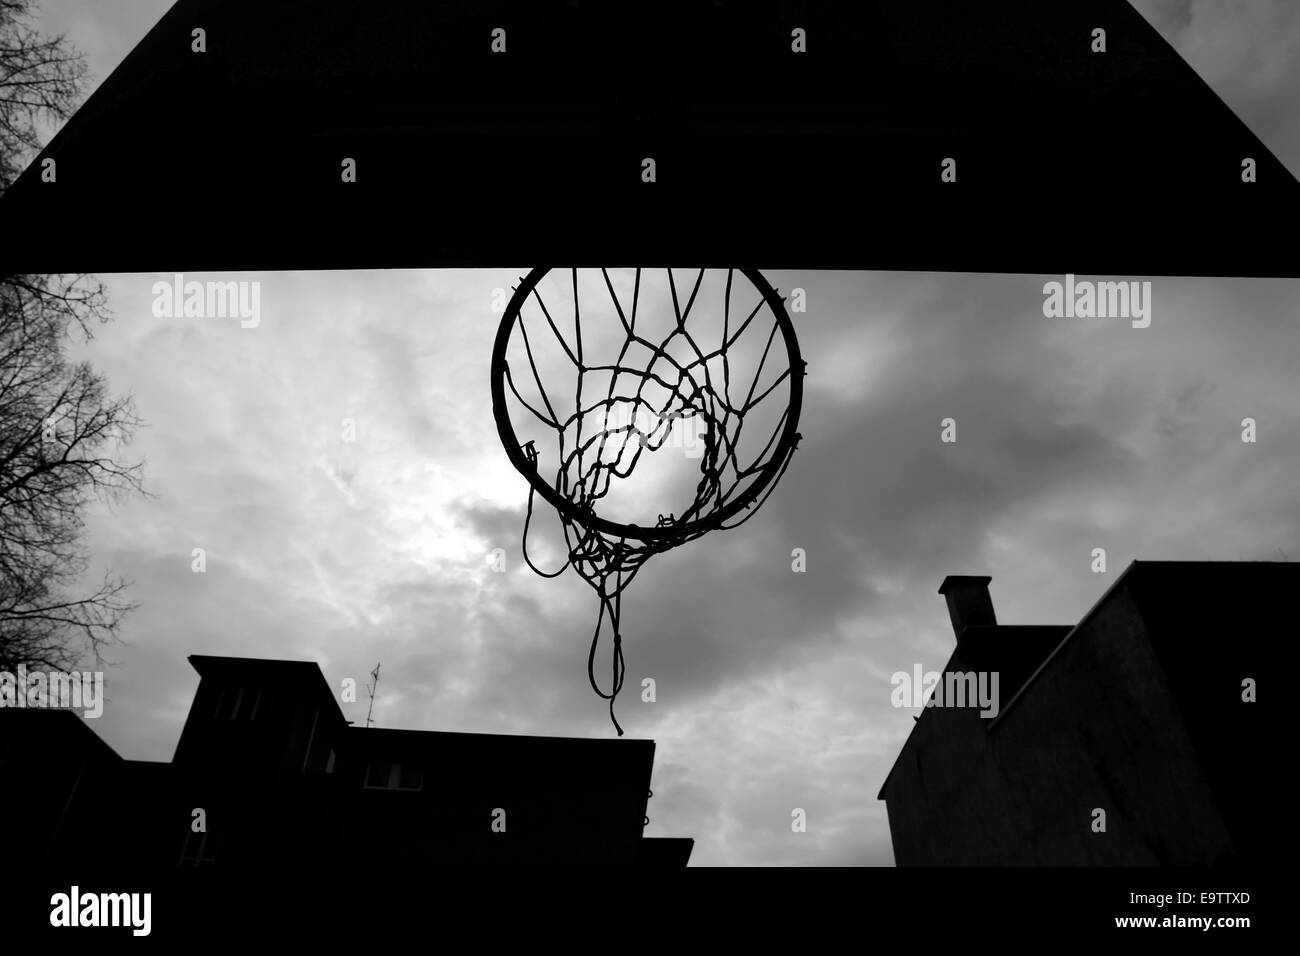 La silhouette d'un panier de basket-ball à l'aire de jeux, prises d'en bas Banque D'Images